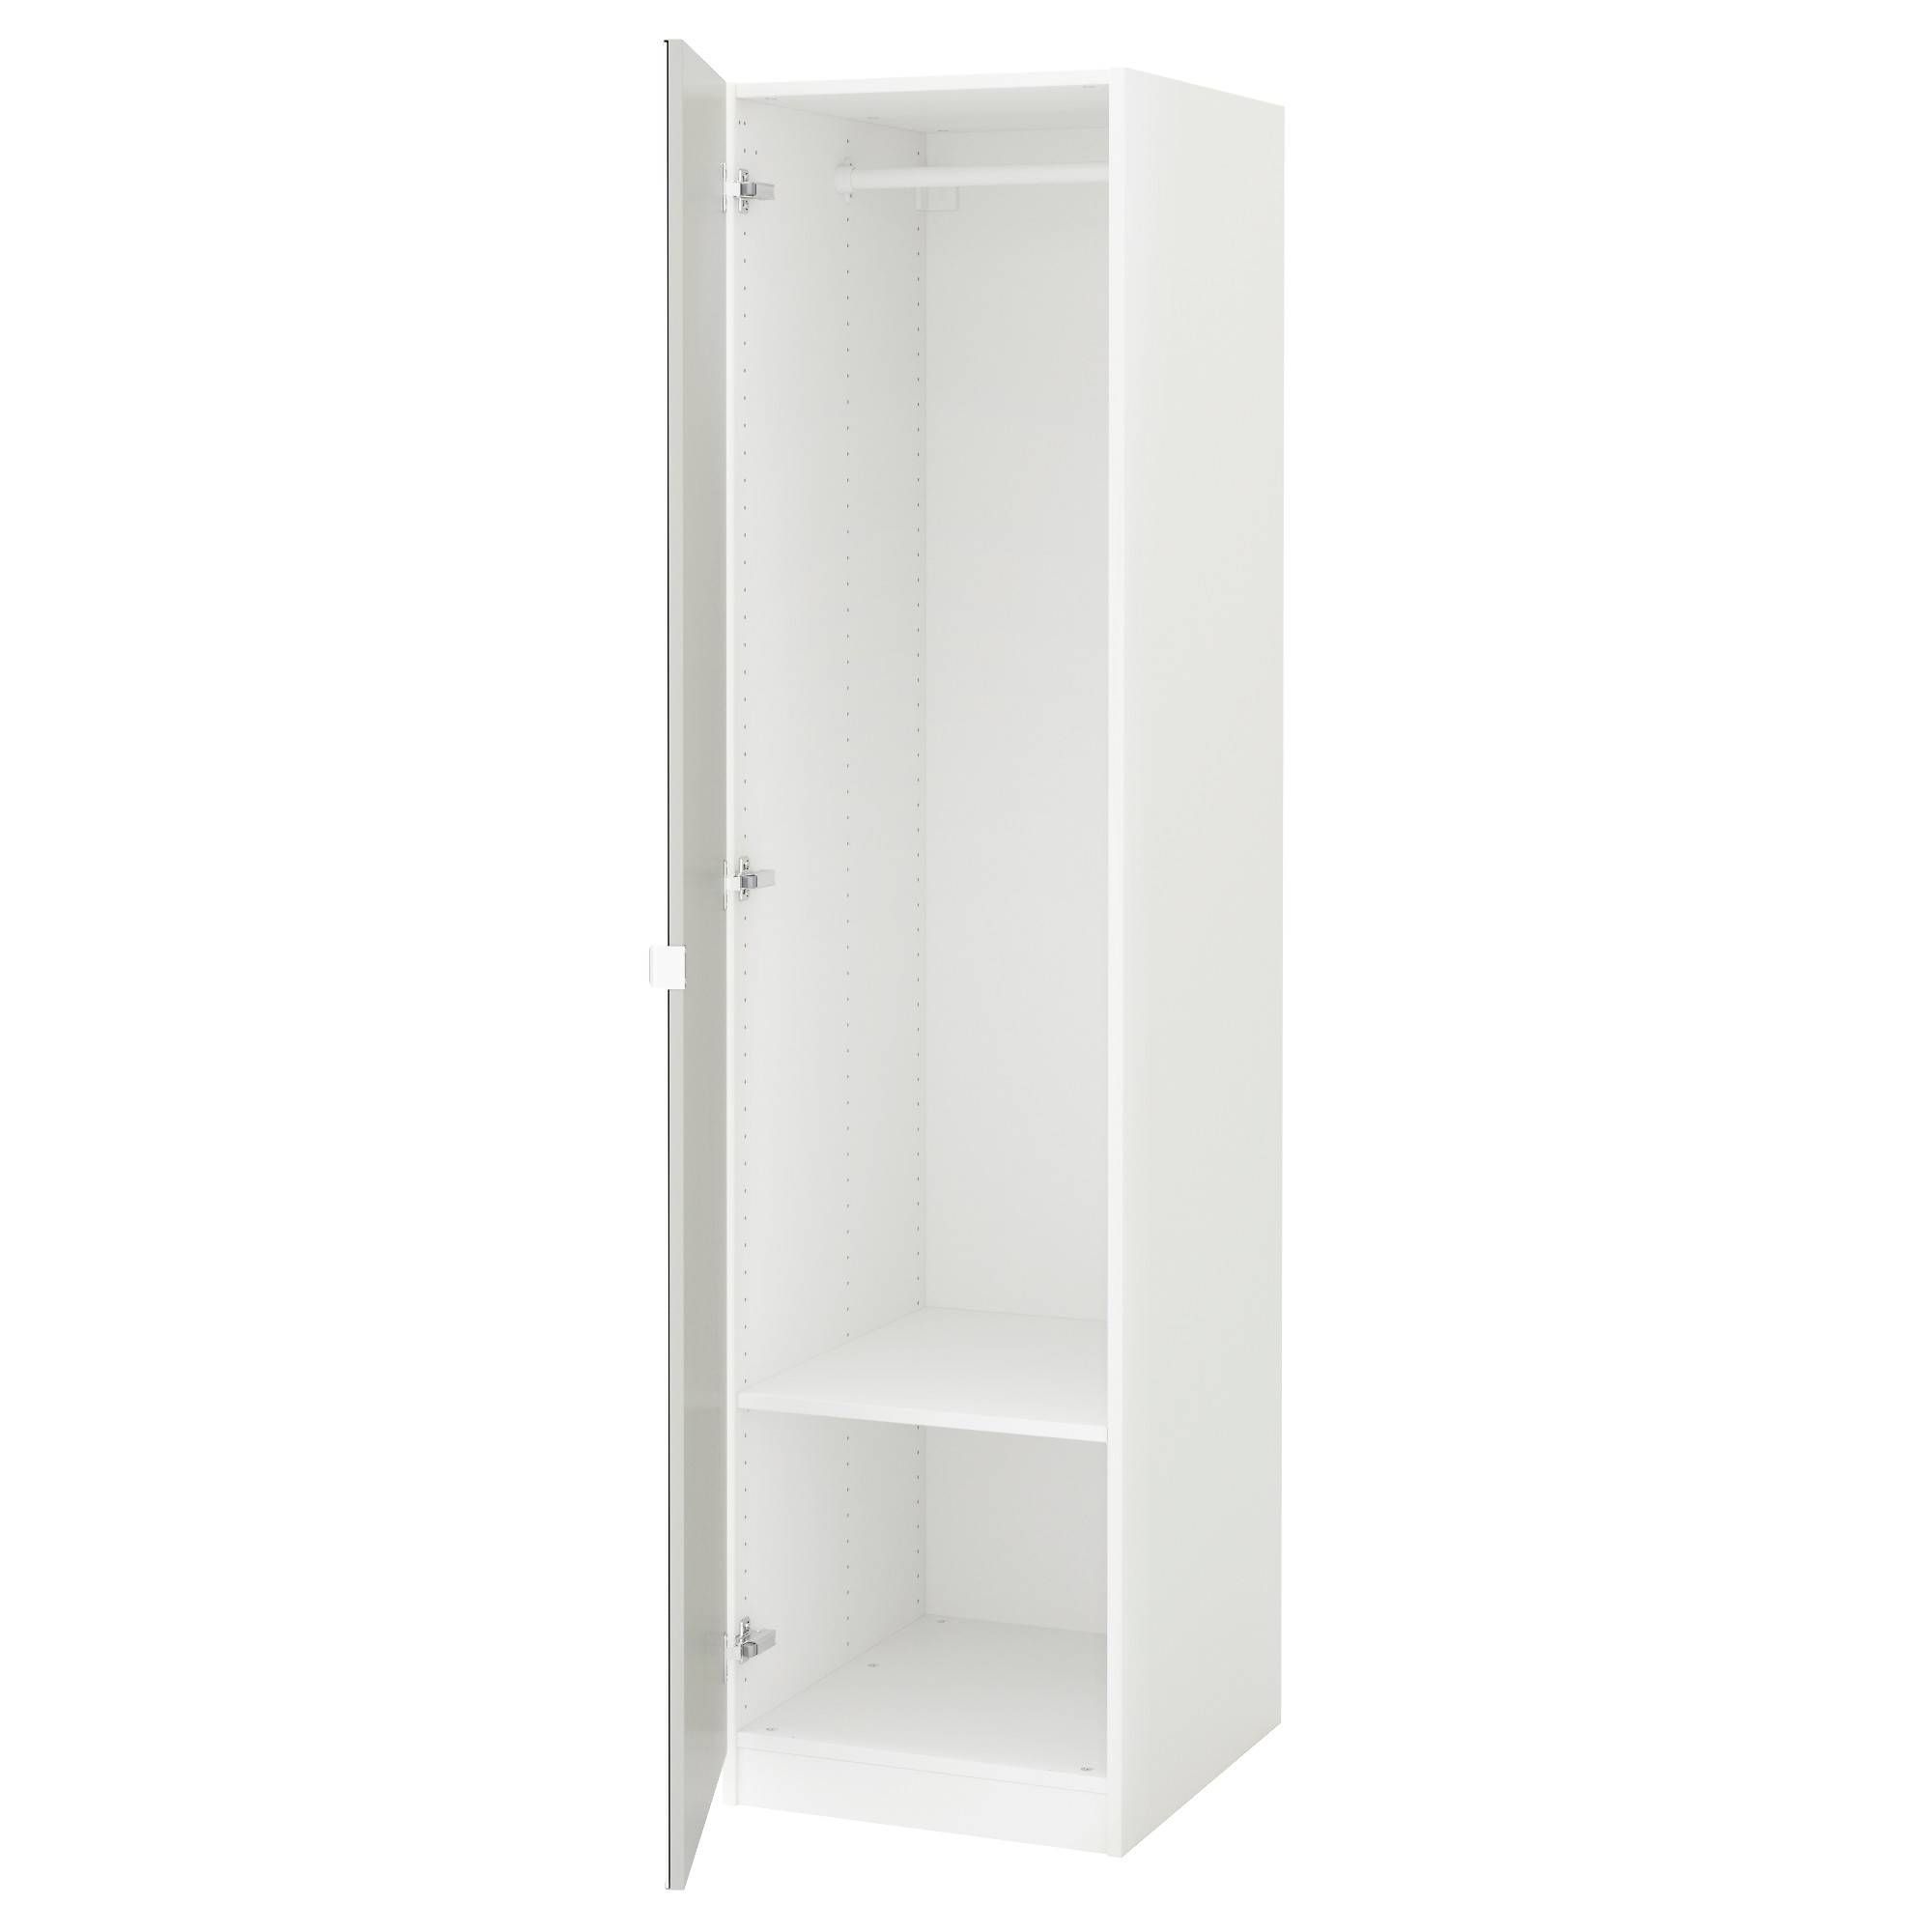 Single Door Wardrobe With Mirror 129 Outstanding For Pax Wardrobe In White Single Door Wardrobes (View 1 of 15)